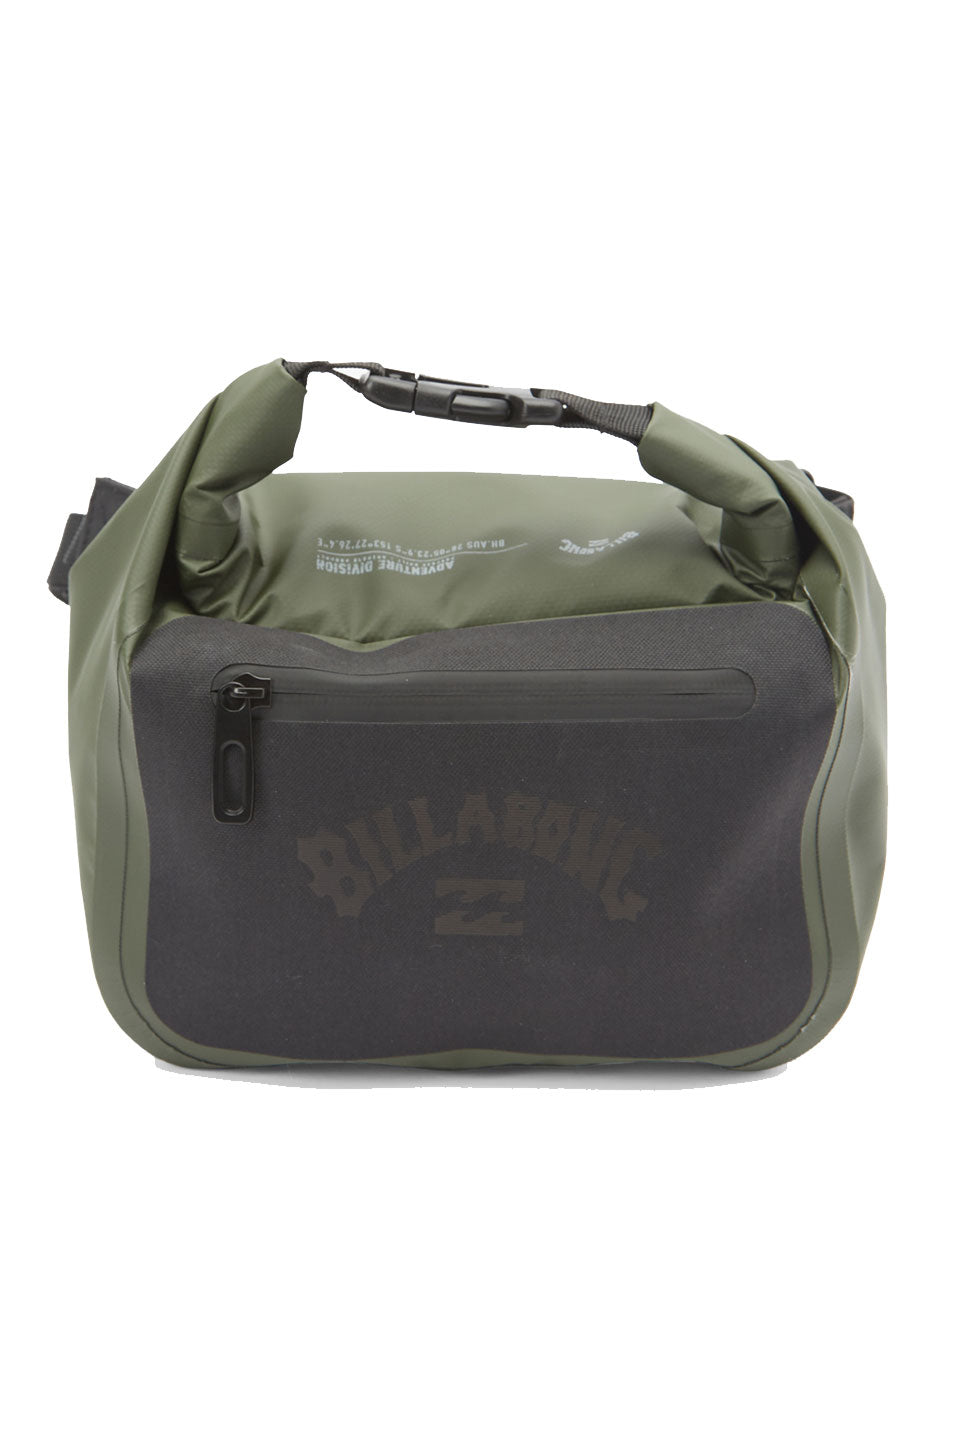 Billabong - Surftrek Storm Bum Bag - Military